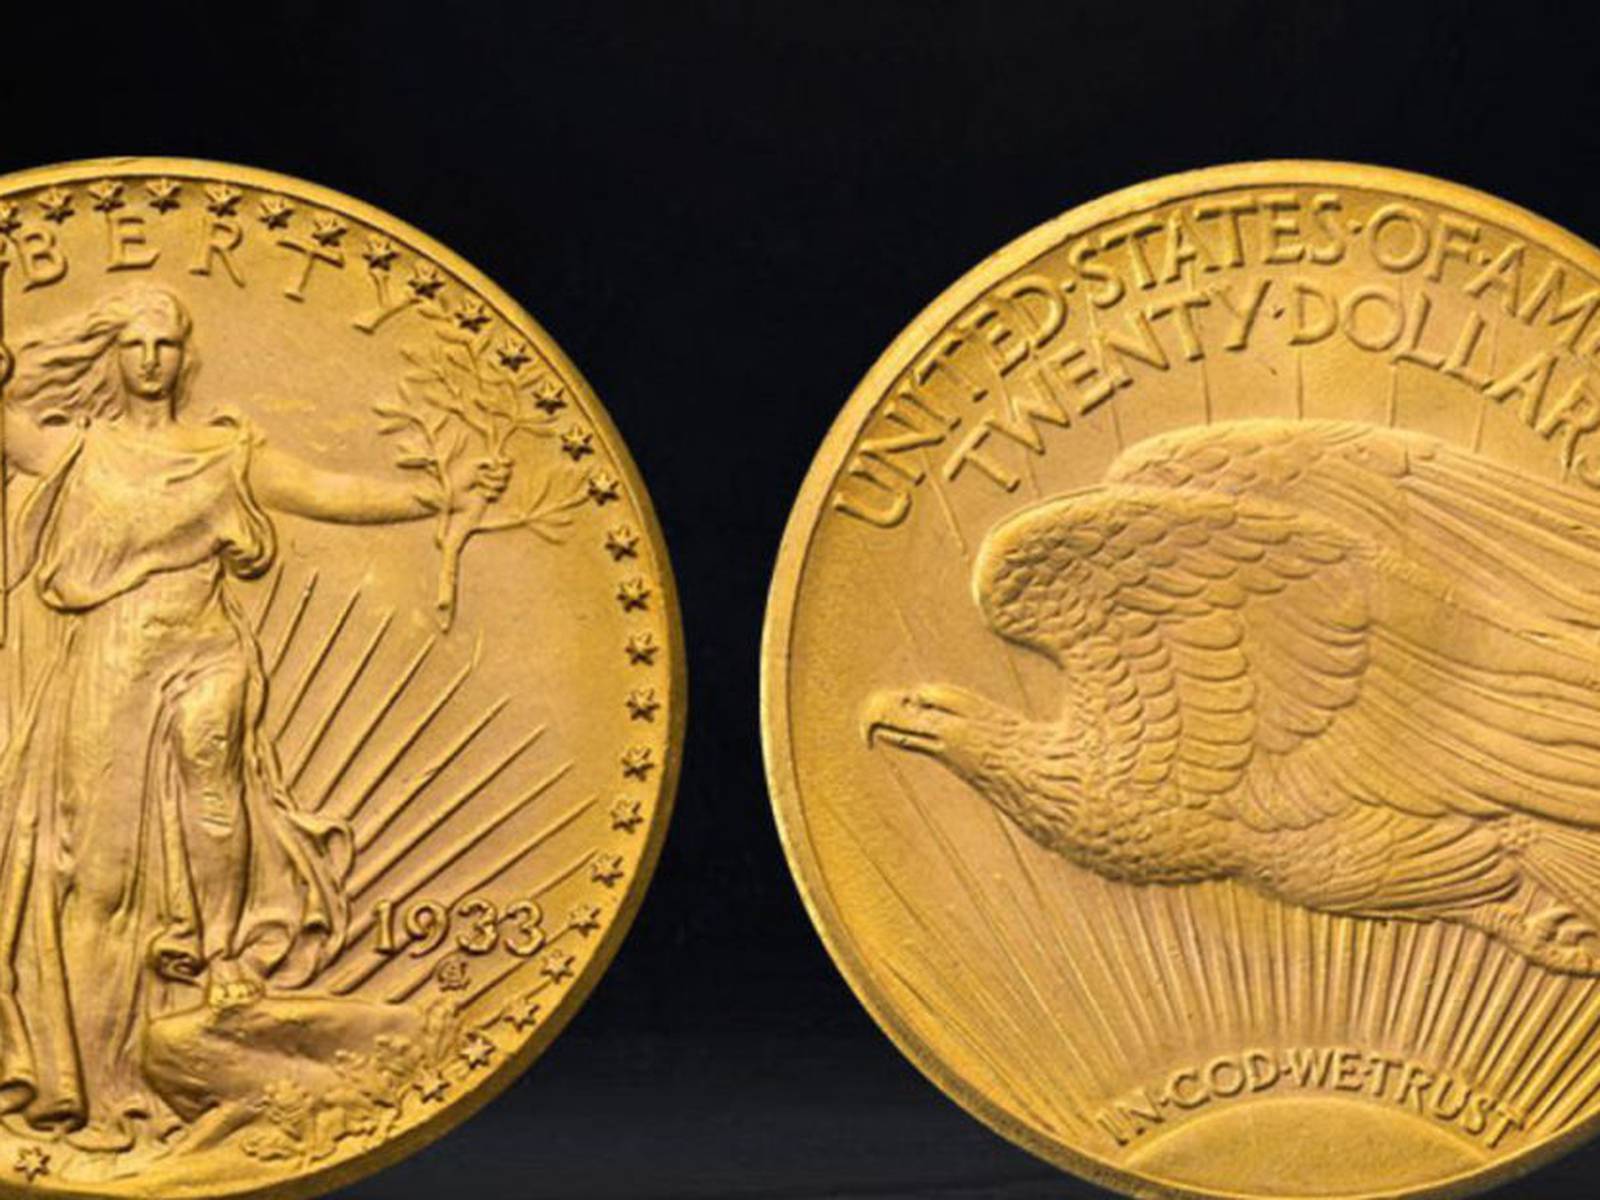 Subastan una moneda 'Águila Doble' de 20 dólares por casi 20 millones